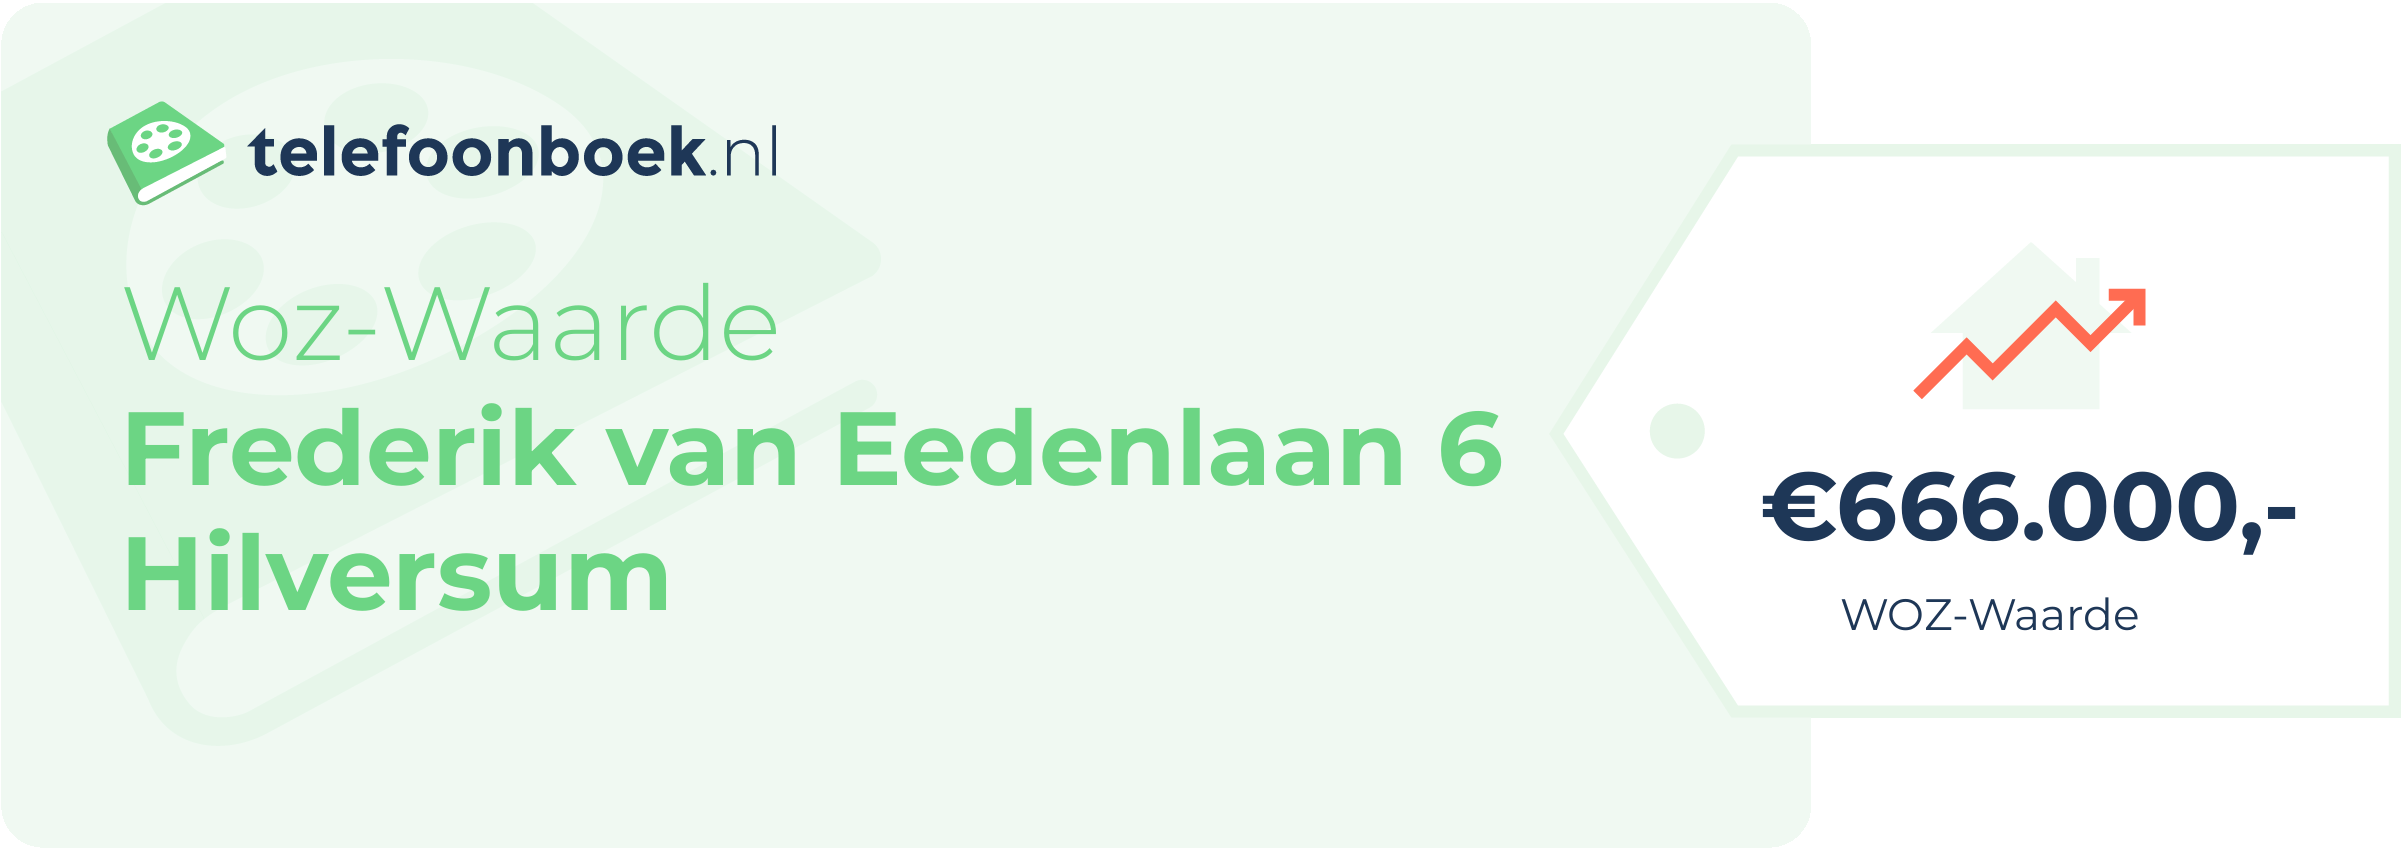 WOZ-waarde Frederik Van Eedenlaan 6 Hilversum